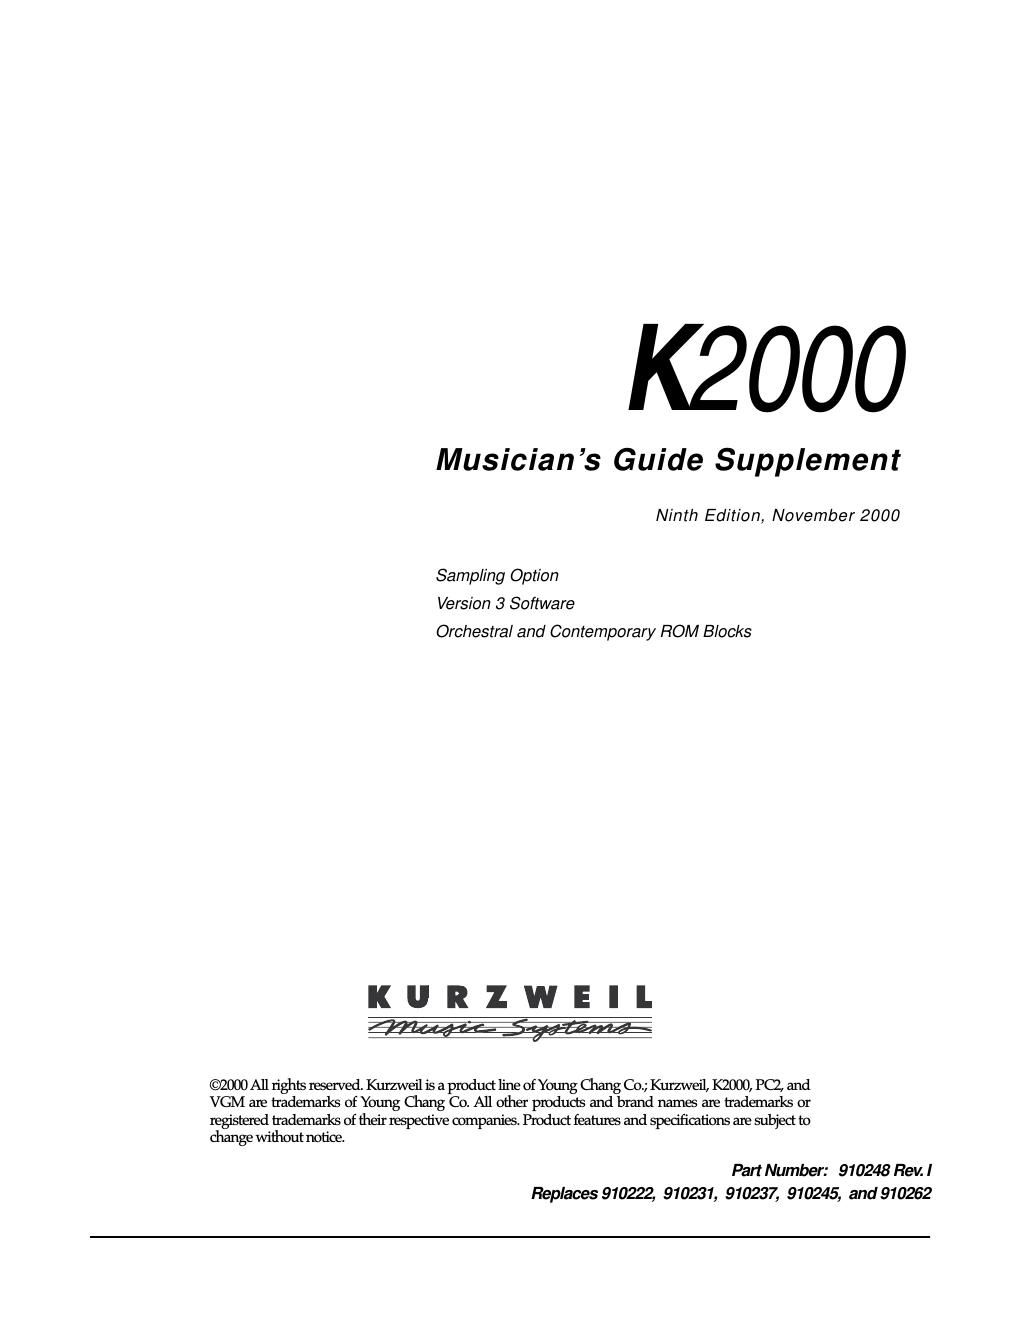 kurzweil k2000 musicians guide supplement